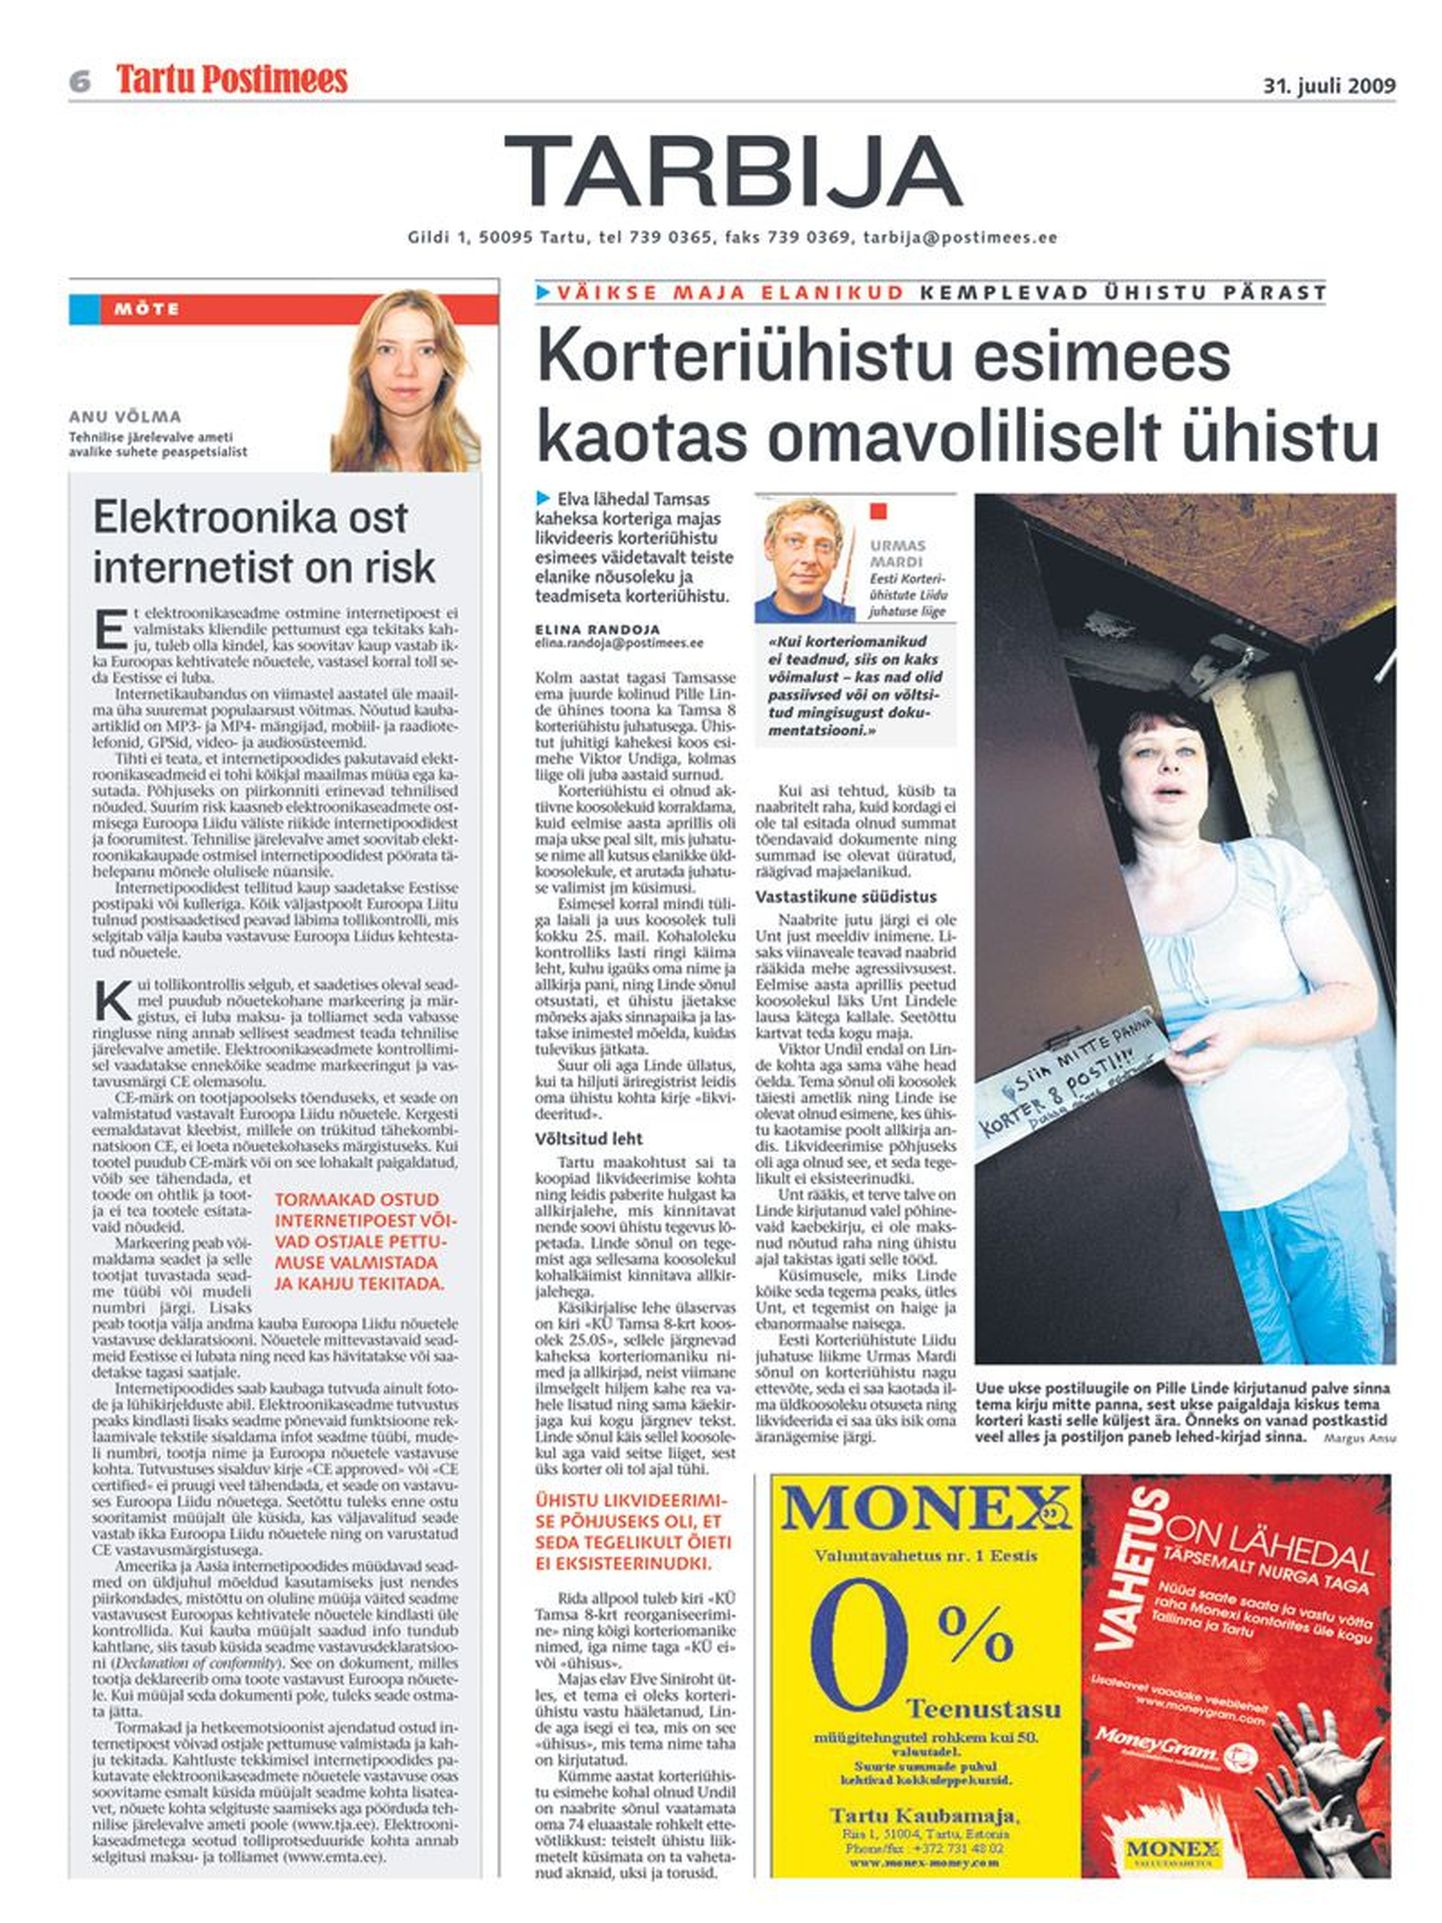 Vaidlust tekitanud artikkel ilmus 31. juuli Tartu Postimehes.